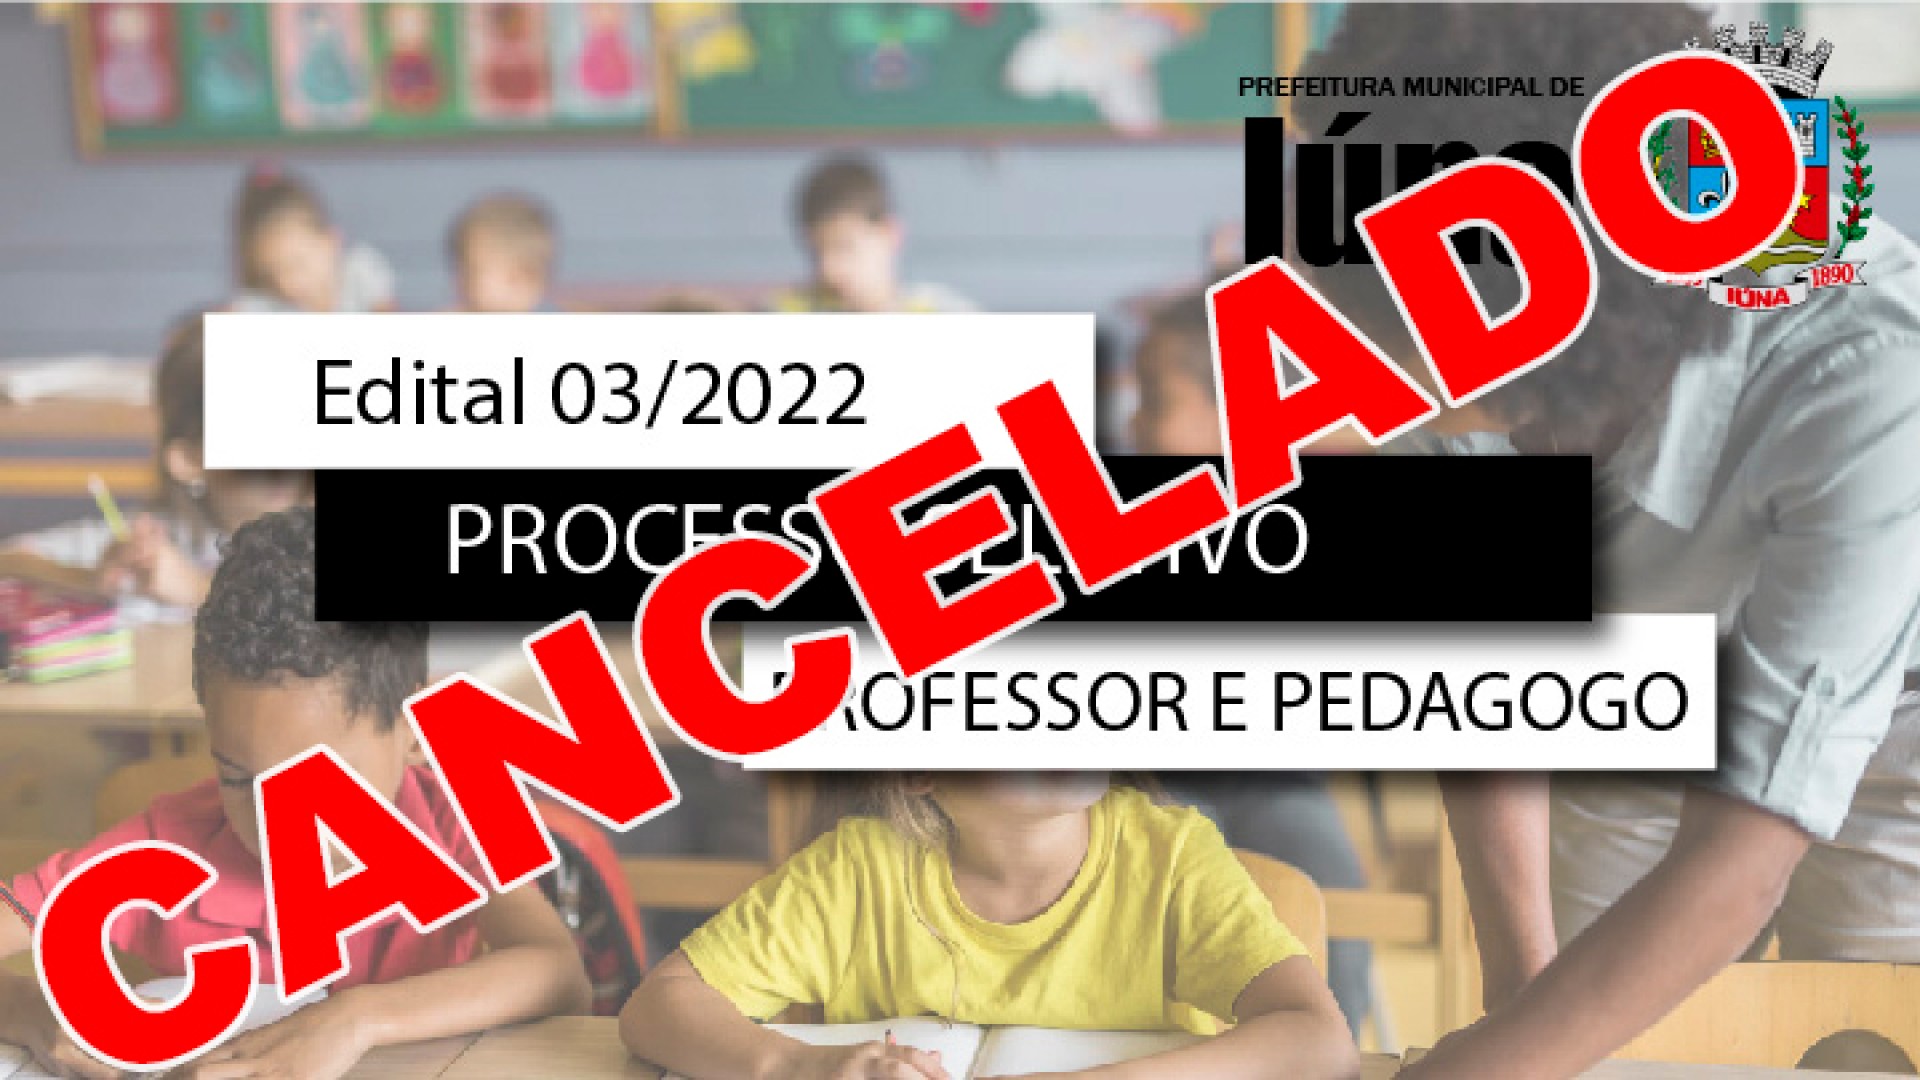 CANCELADO - Processo Seletivo nº 03/2022 - PROFESSOR A – DT, PROFESSOR B – DT e PEDAGOGO